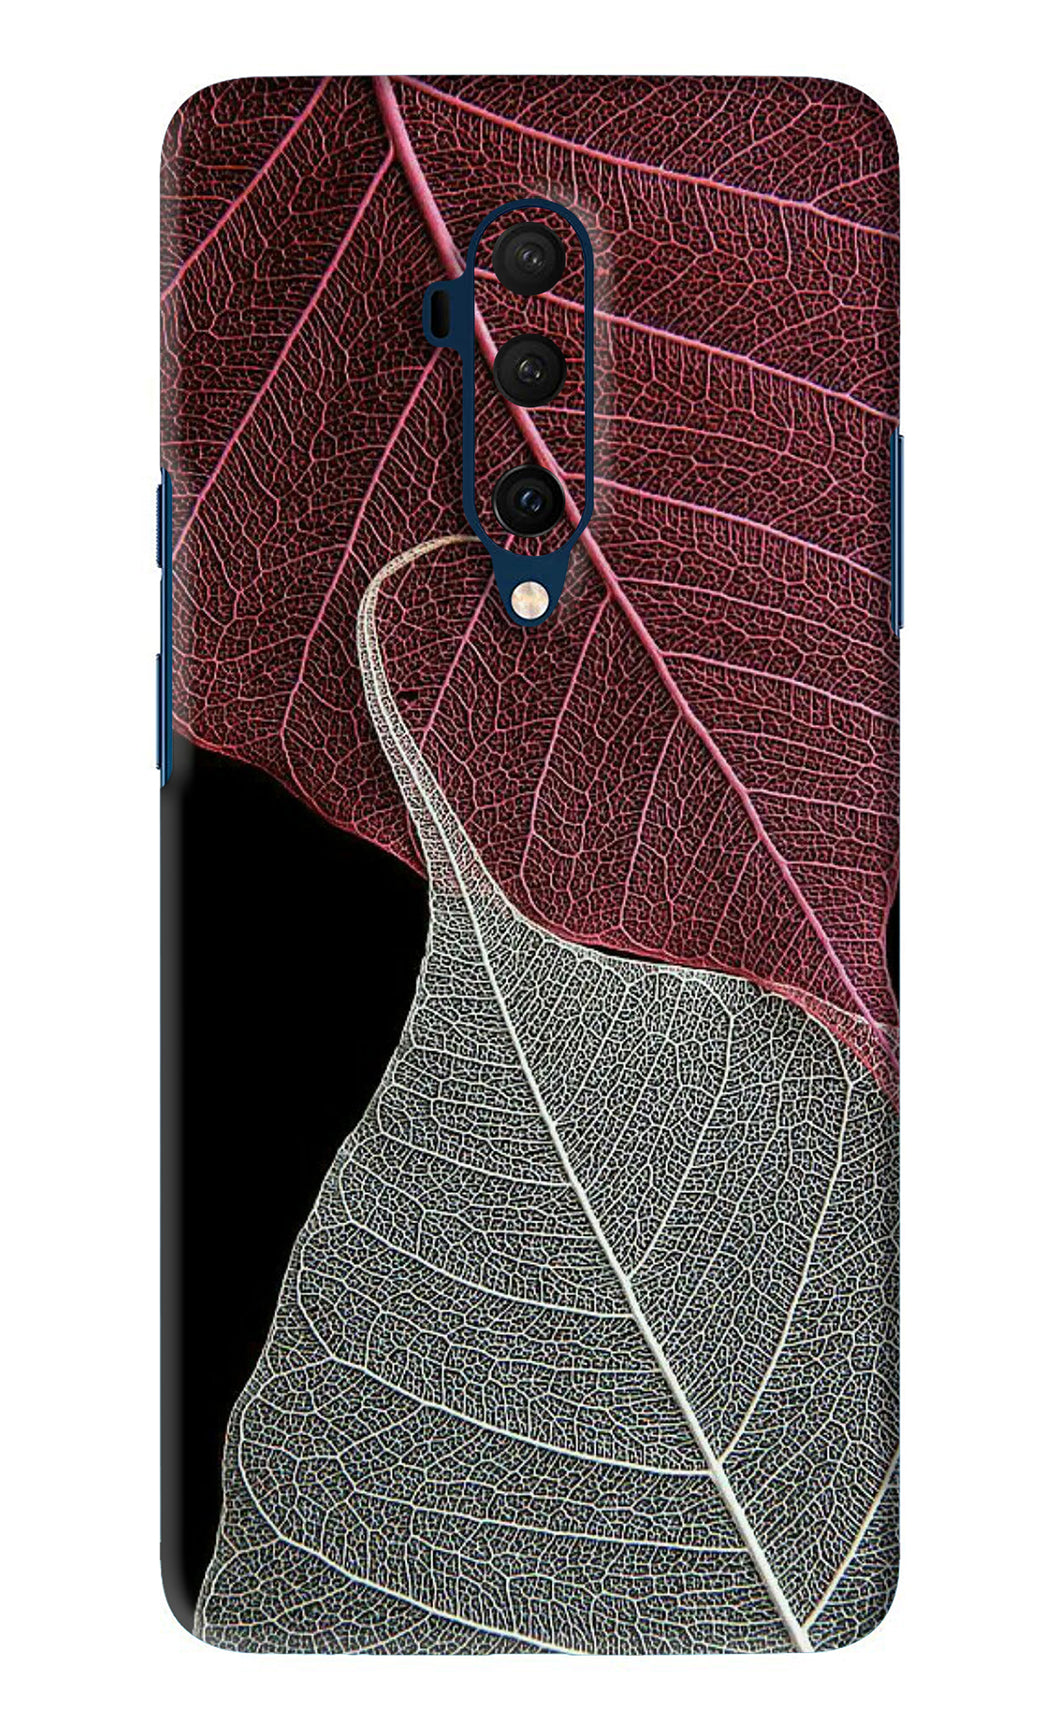 Leaf Pattern OnePlus 7T Pro Back Skin Wrap